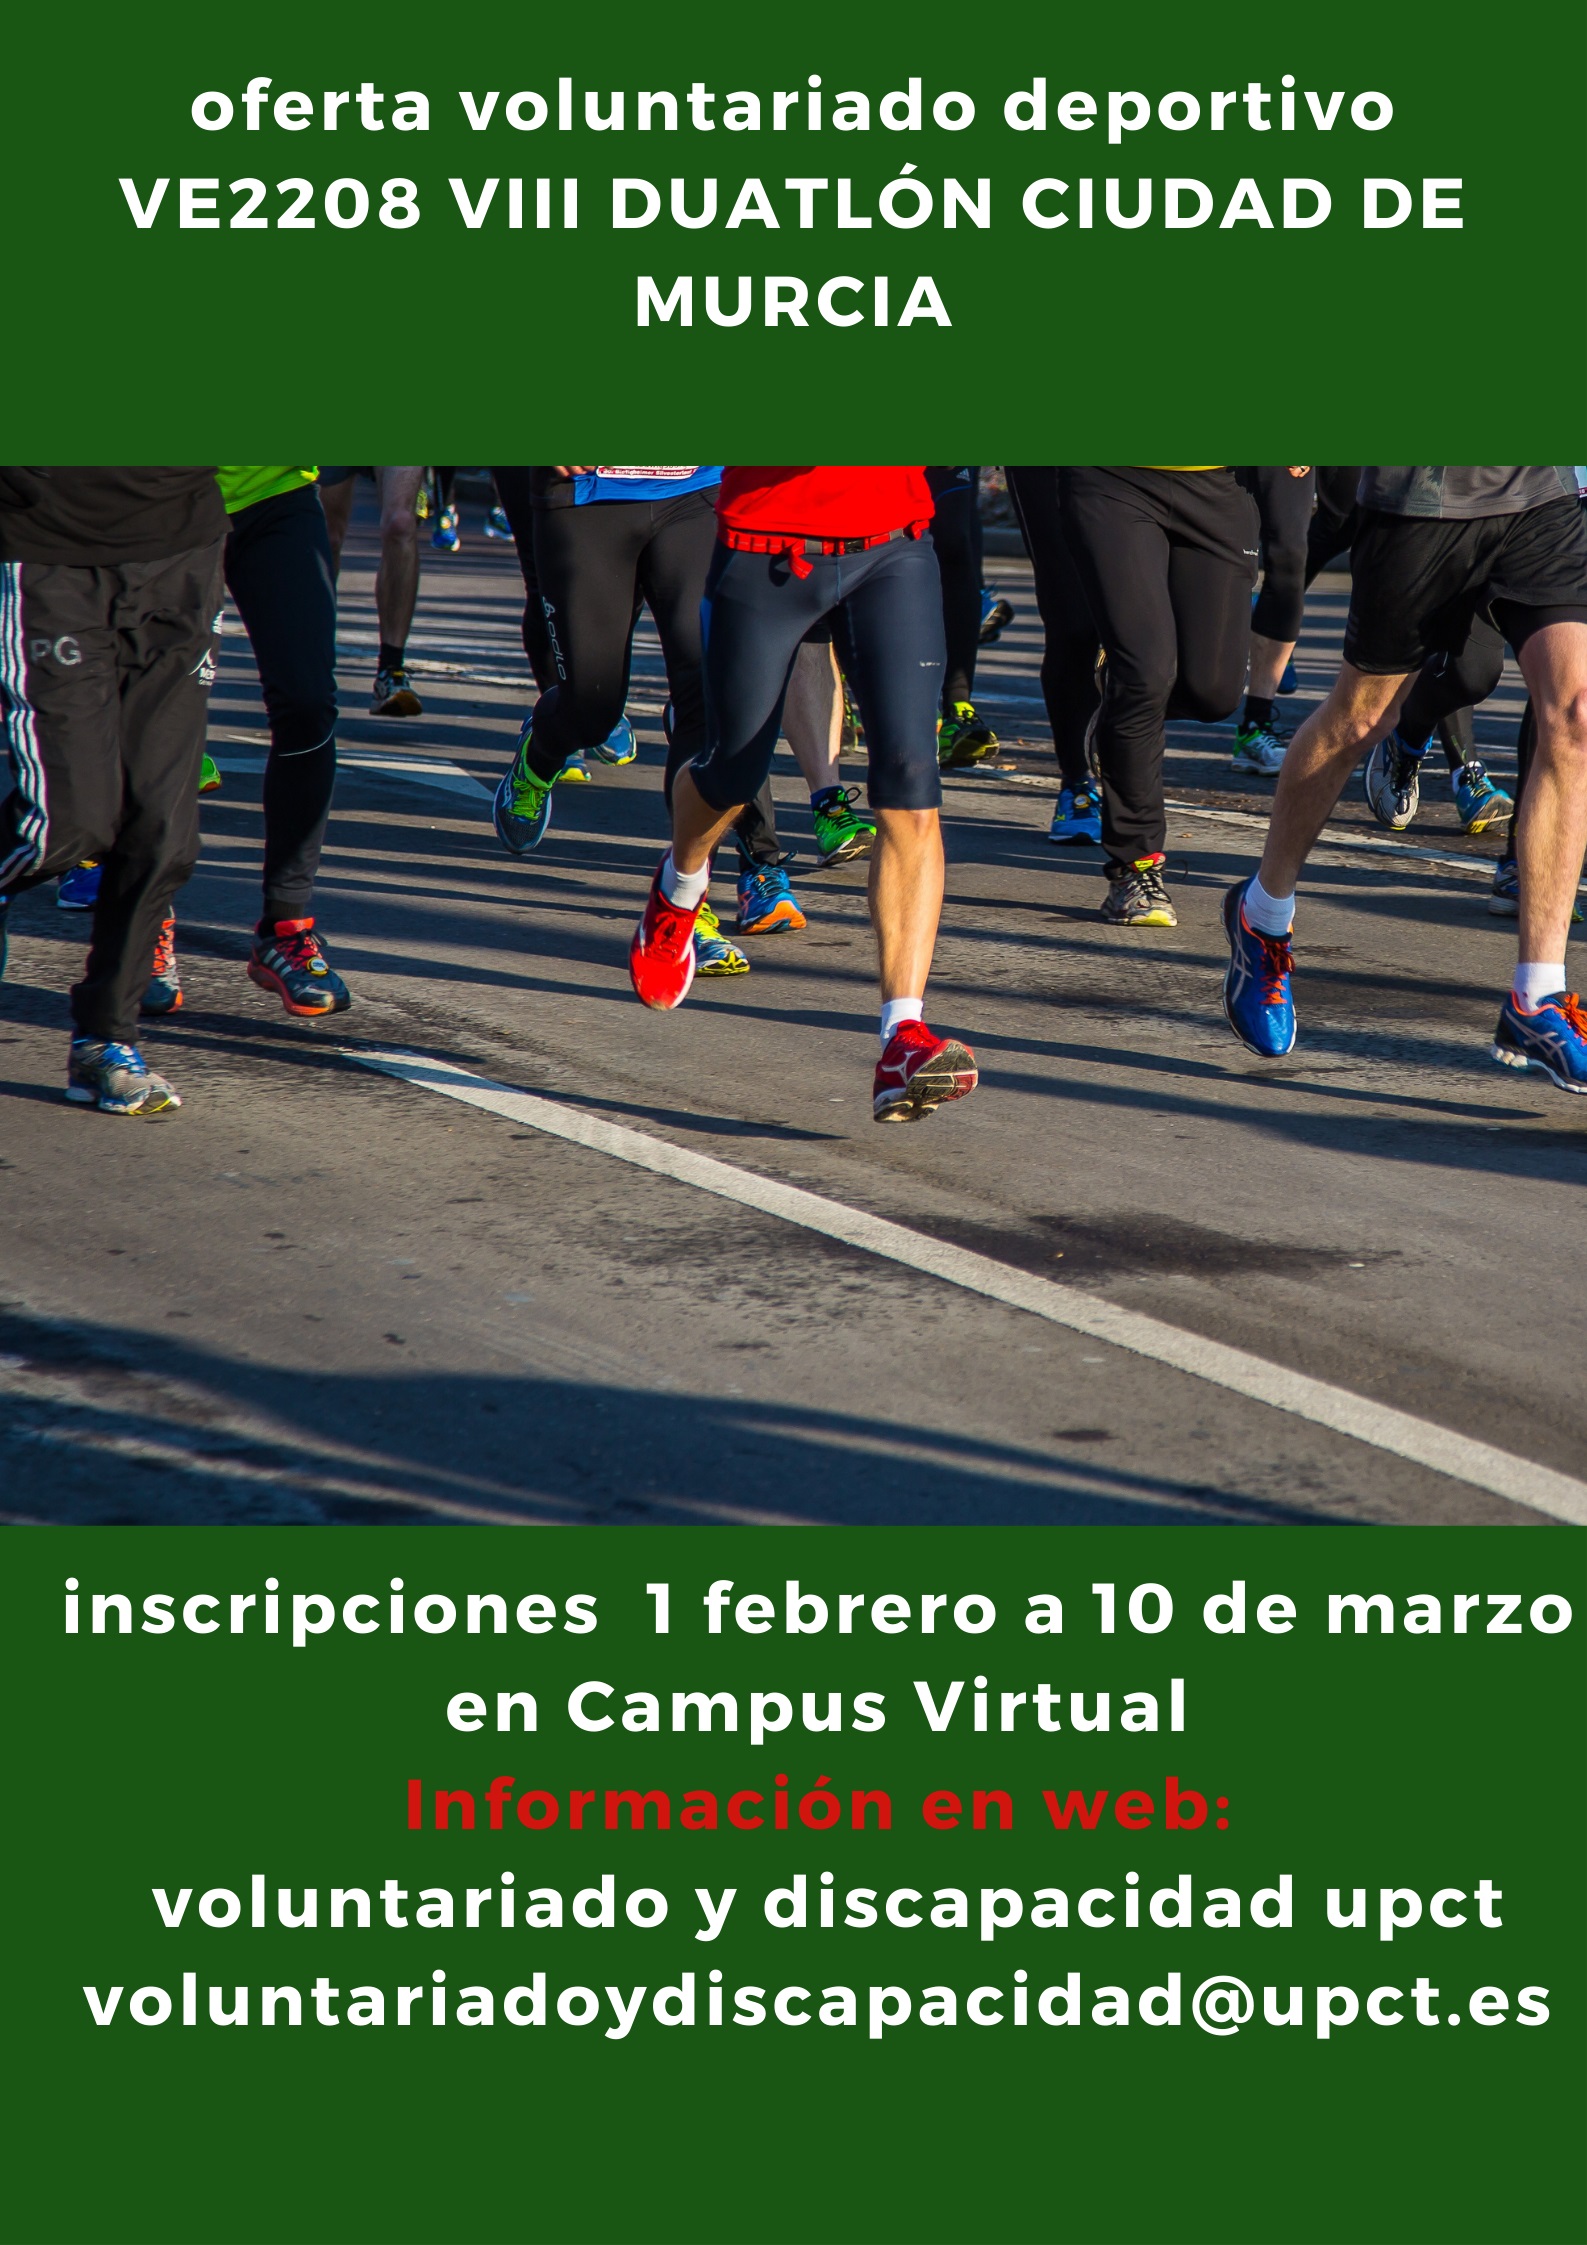 foto: Oferta voluntariado deportivo. VIII Duatlón ciudad de Murcia